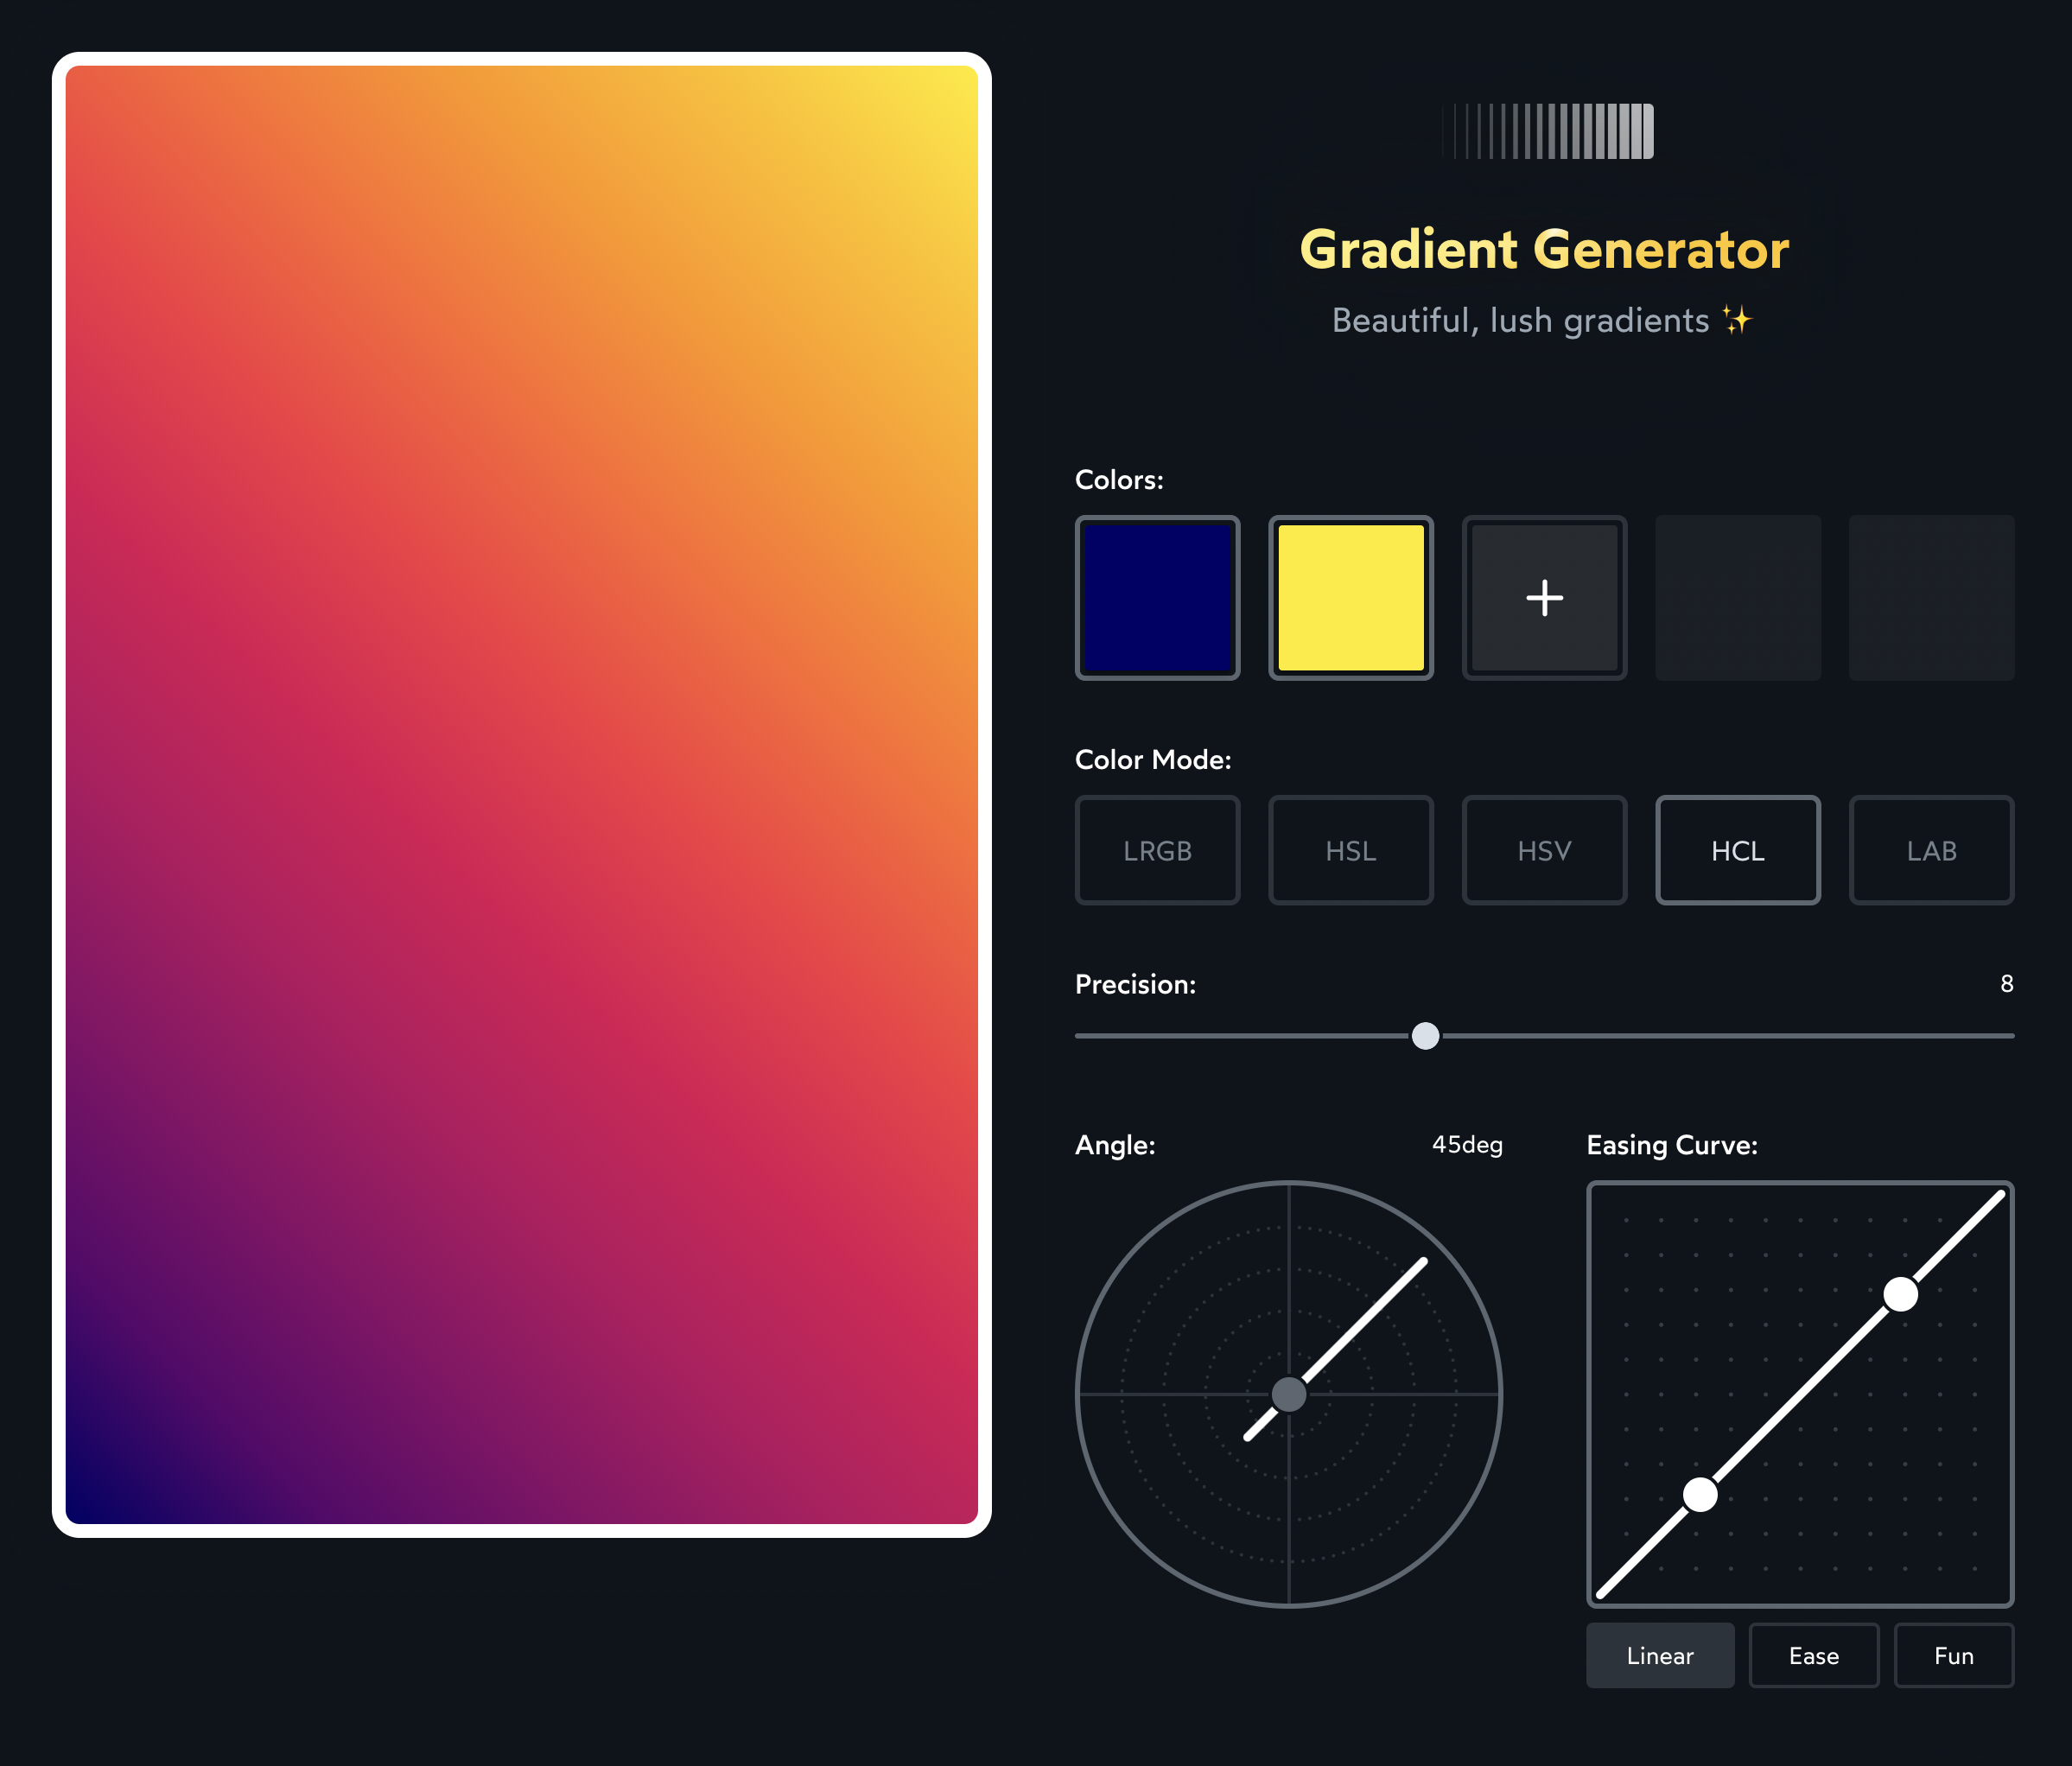 Gradient Generator: Tạo nền hoàn hảo với Gradient Generator, công cụ đơn giản cho việc tạo màu pha trộn từ các màu sắc khác nhau. Hãy dùng nó để thay đổi không gian trên trang web của bạn và tạo ra các hiệu ứng đẹp mắt để thu hút người dùng.